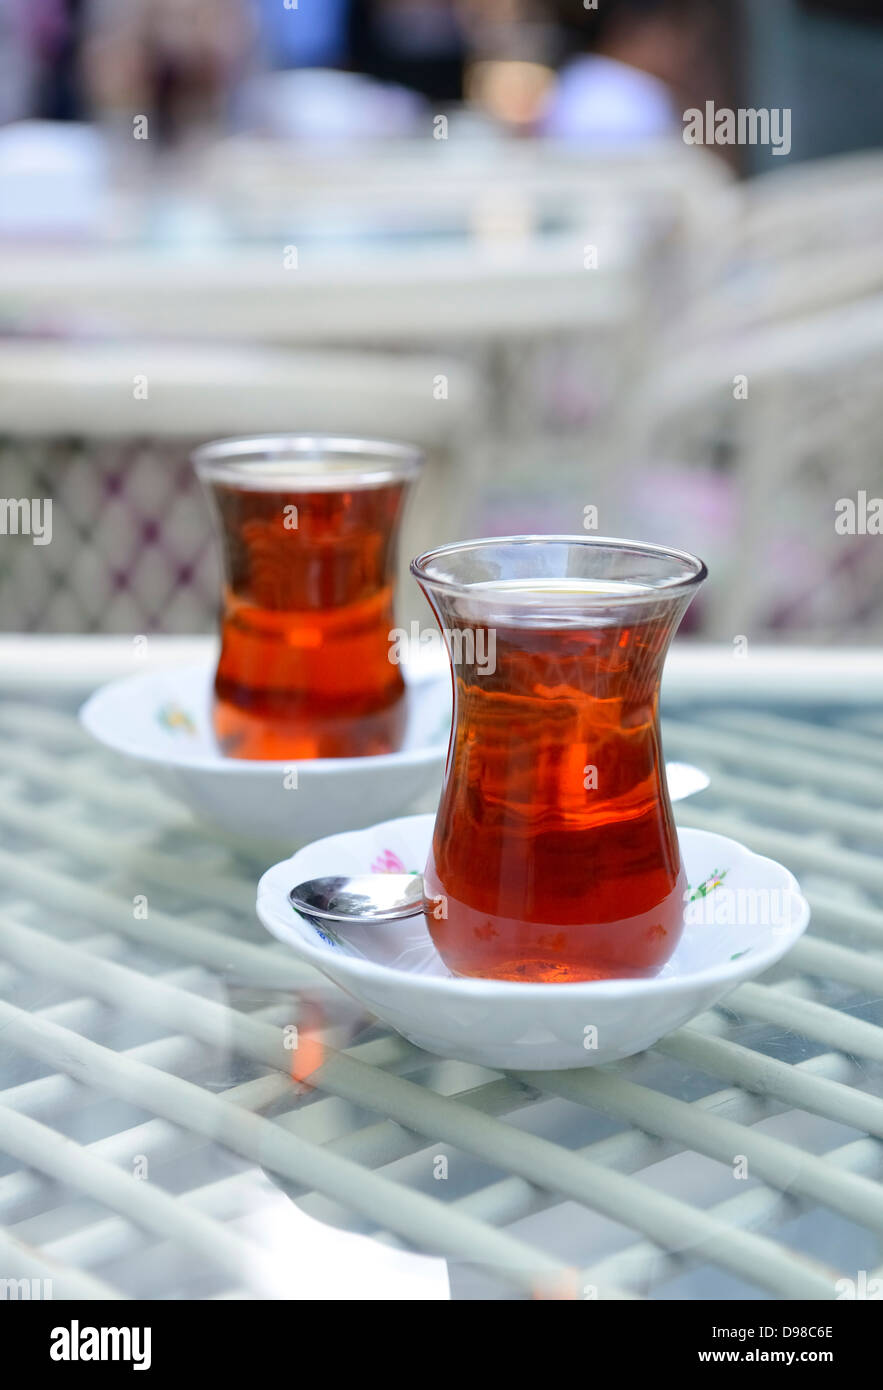 Turkey, Istanbul, Turkish tea in glass on table Stock Photo